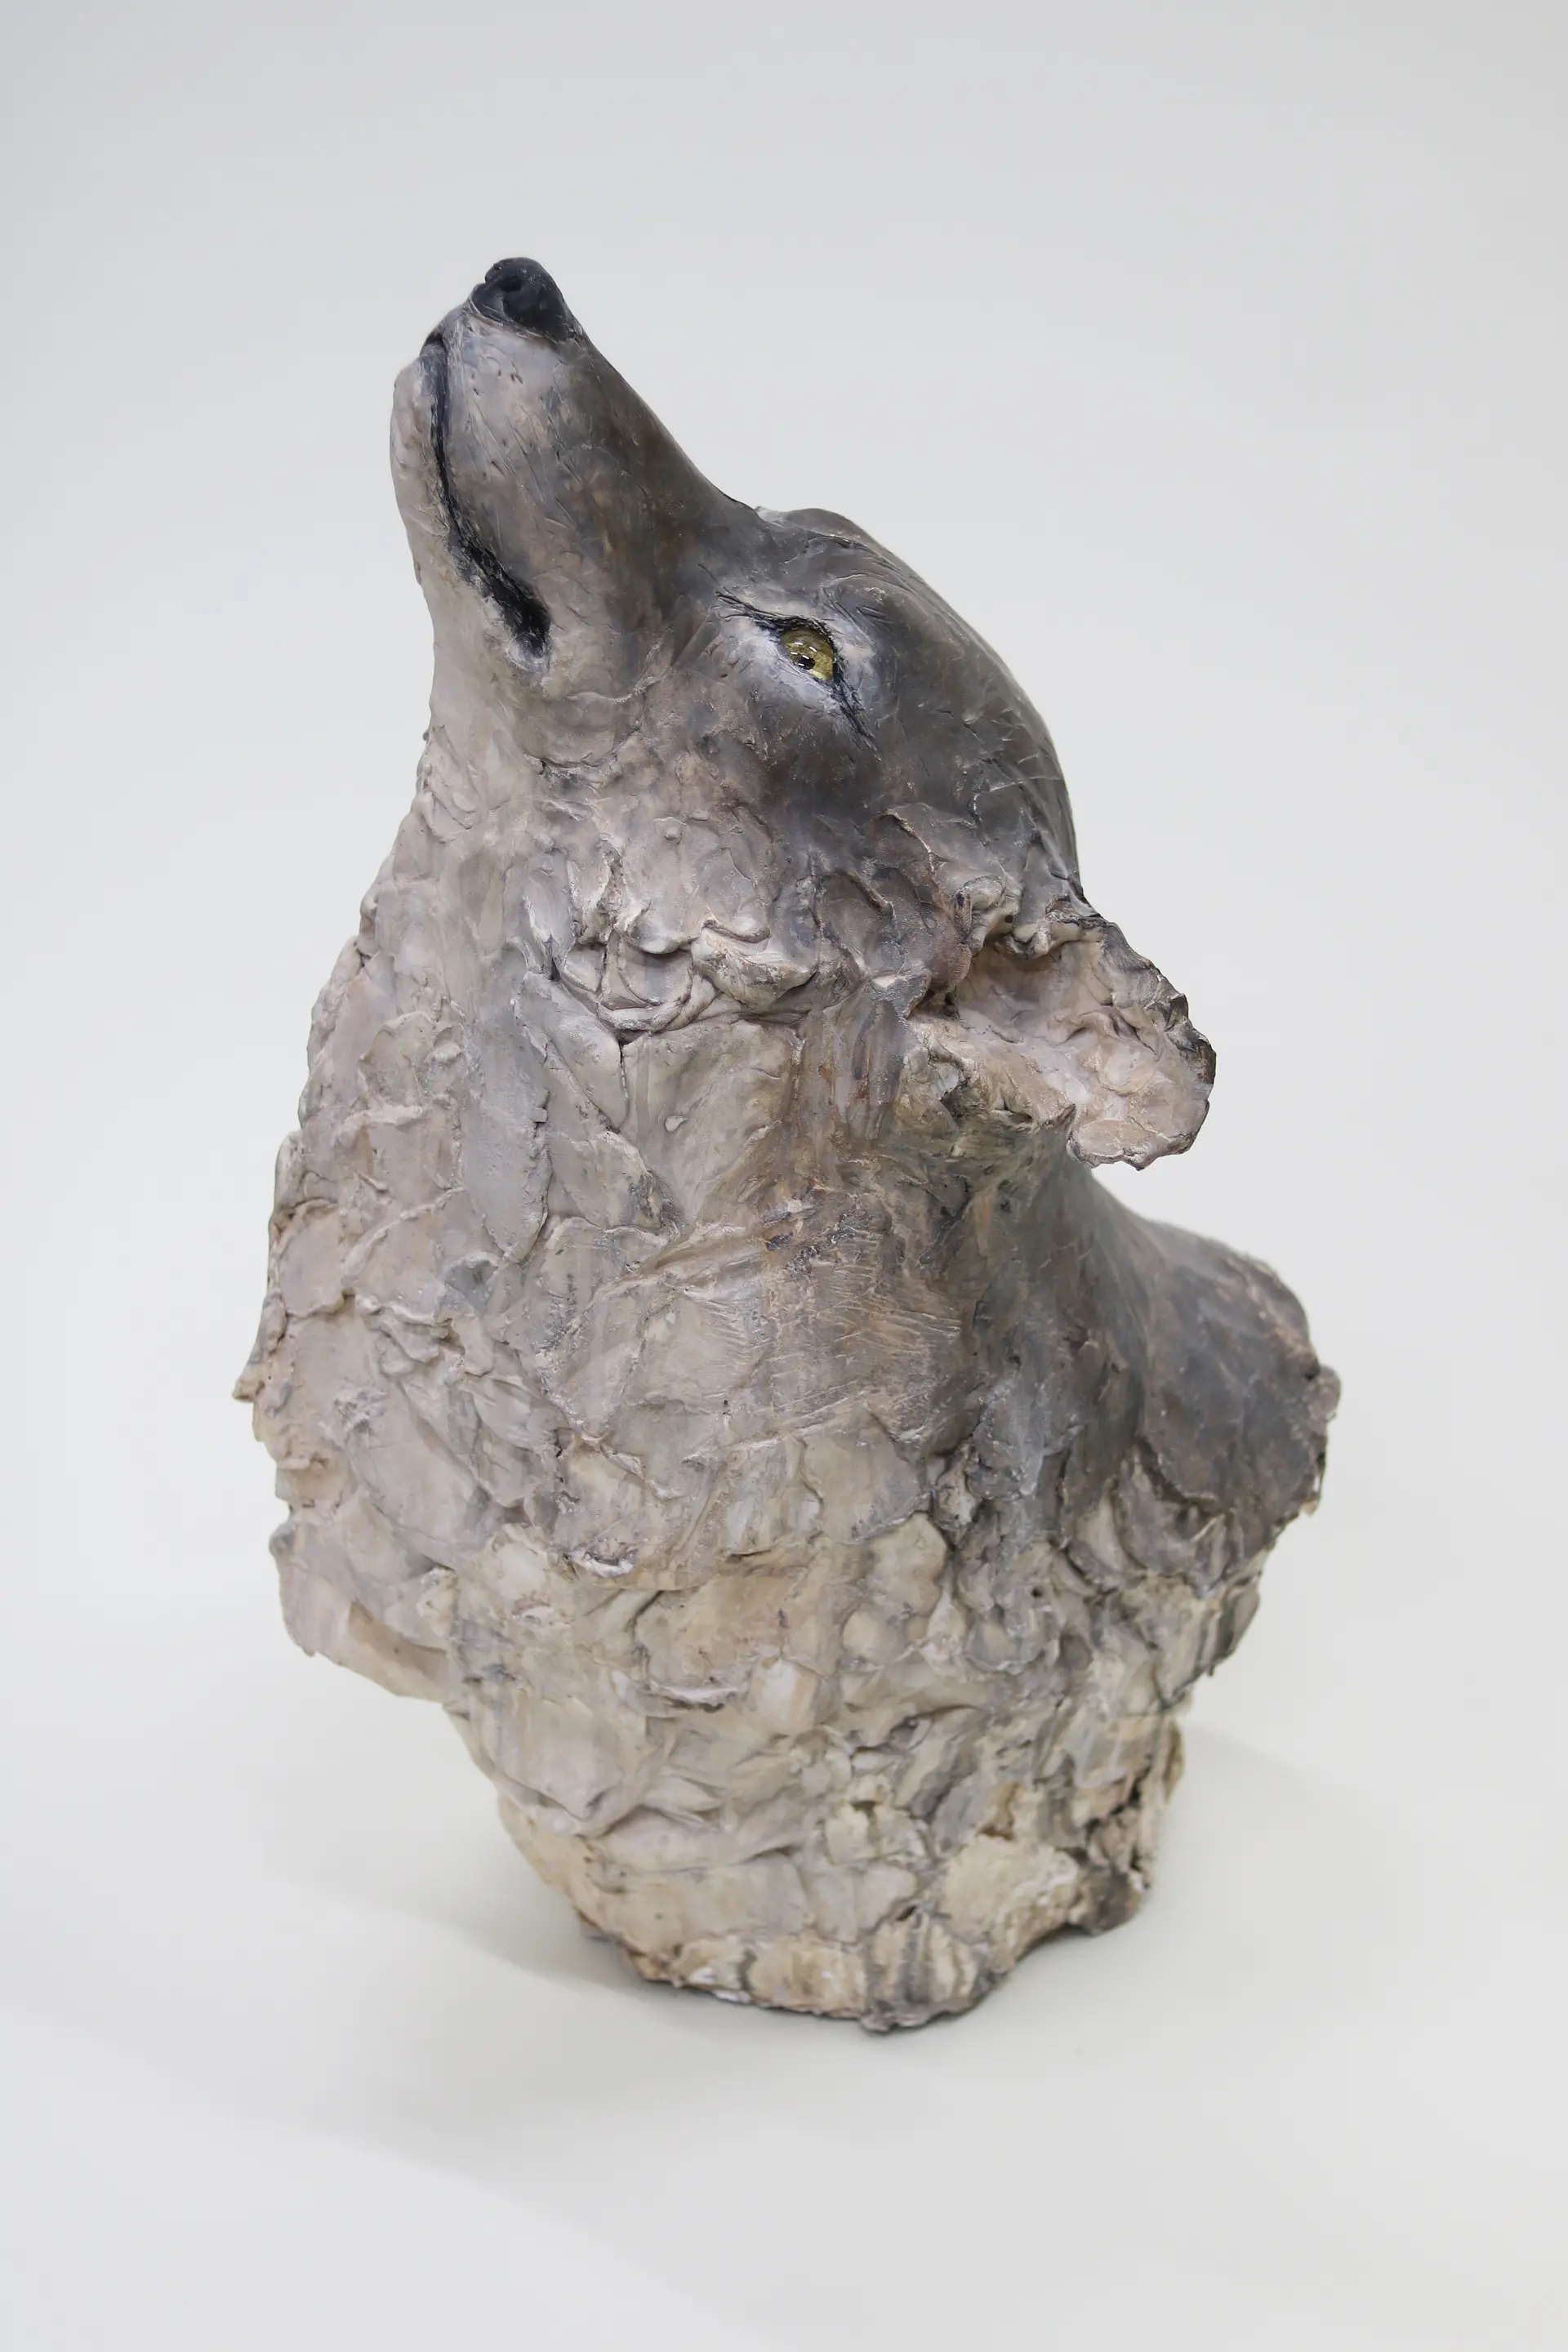 月を知る-オオカミ- by 瀬戸優 | 現代アートの販売・通販 | ArtSticker